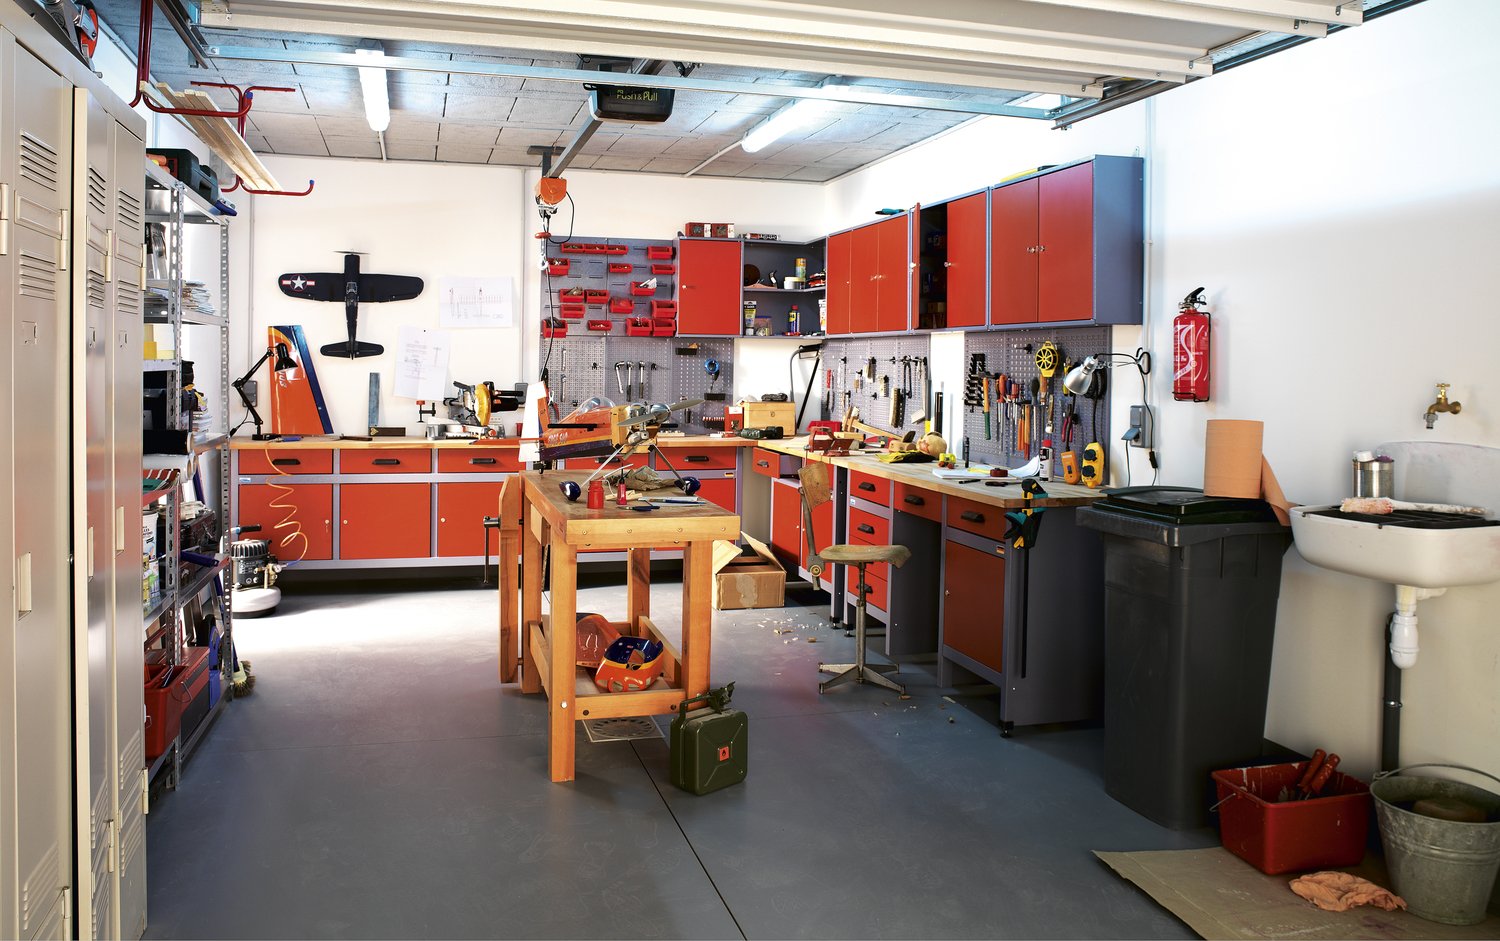 Comment Amenager Un Atelier Dans Son Garage Housekeeping Magazine | The ...